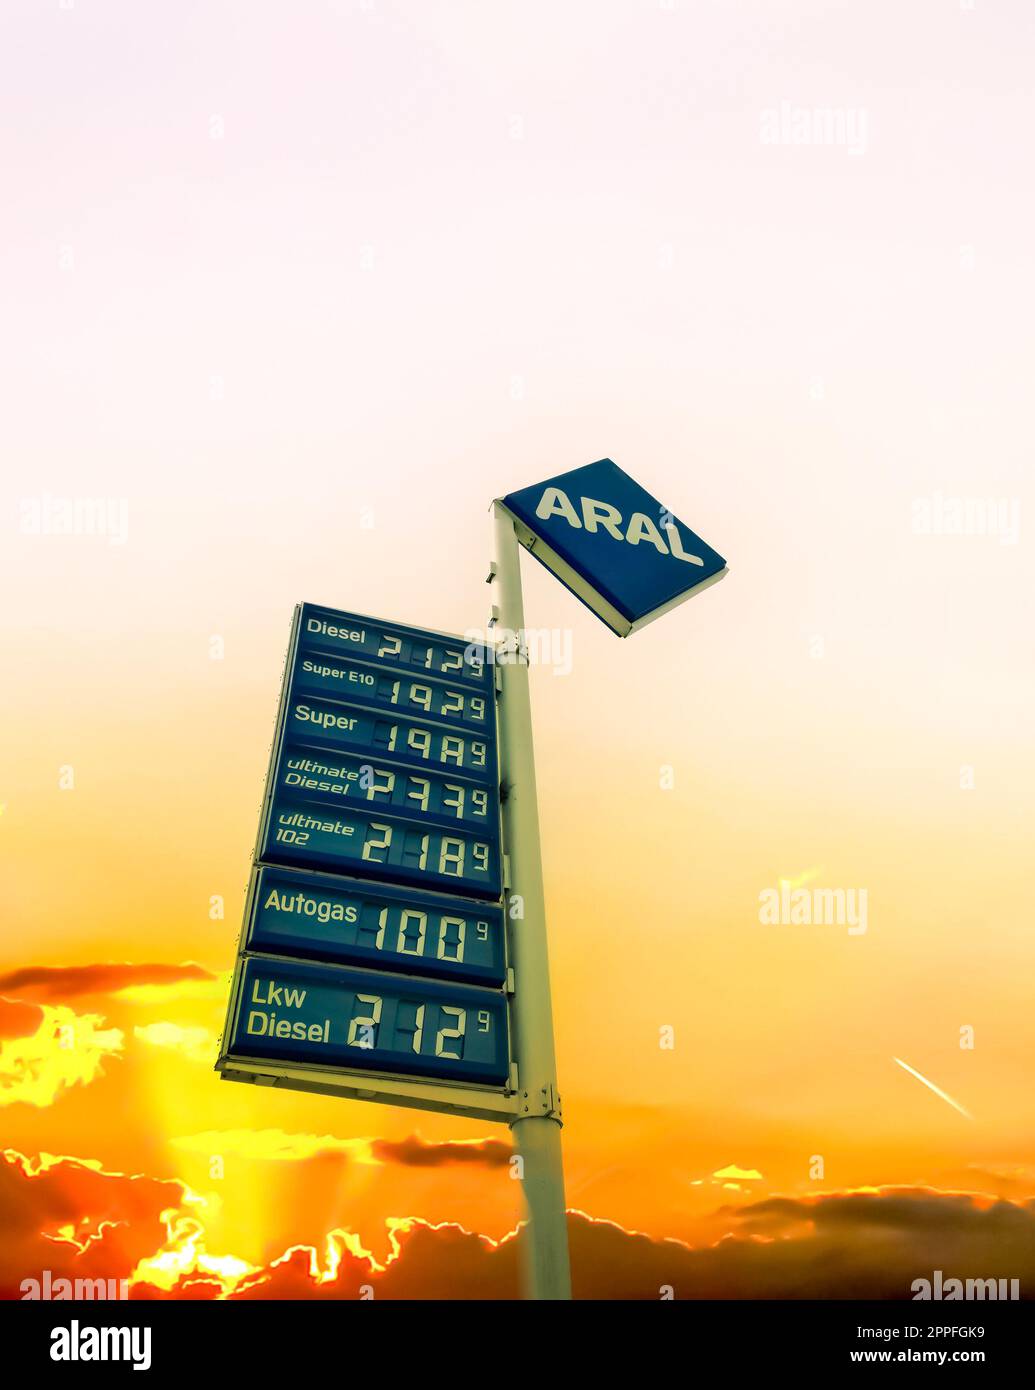 Kiel, Germania - 1 luglio 2022: Logo e prezzi del carburante di ARAL in Germania al tramonto. Aral è un marchio di carburanti per automobili e stazioni di servizio. Foto Stock